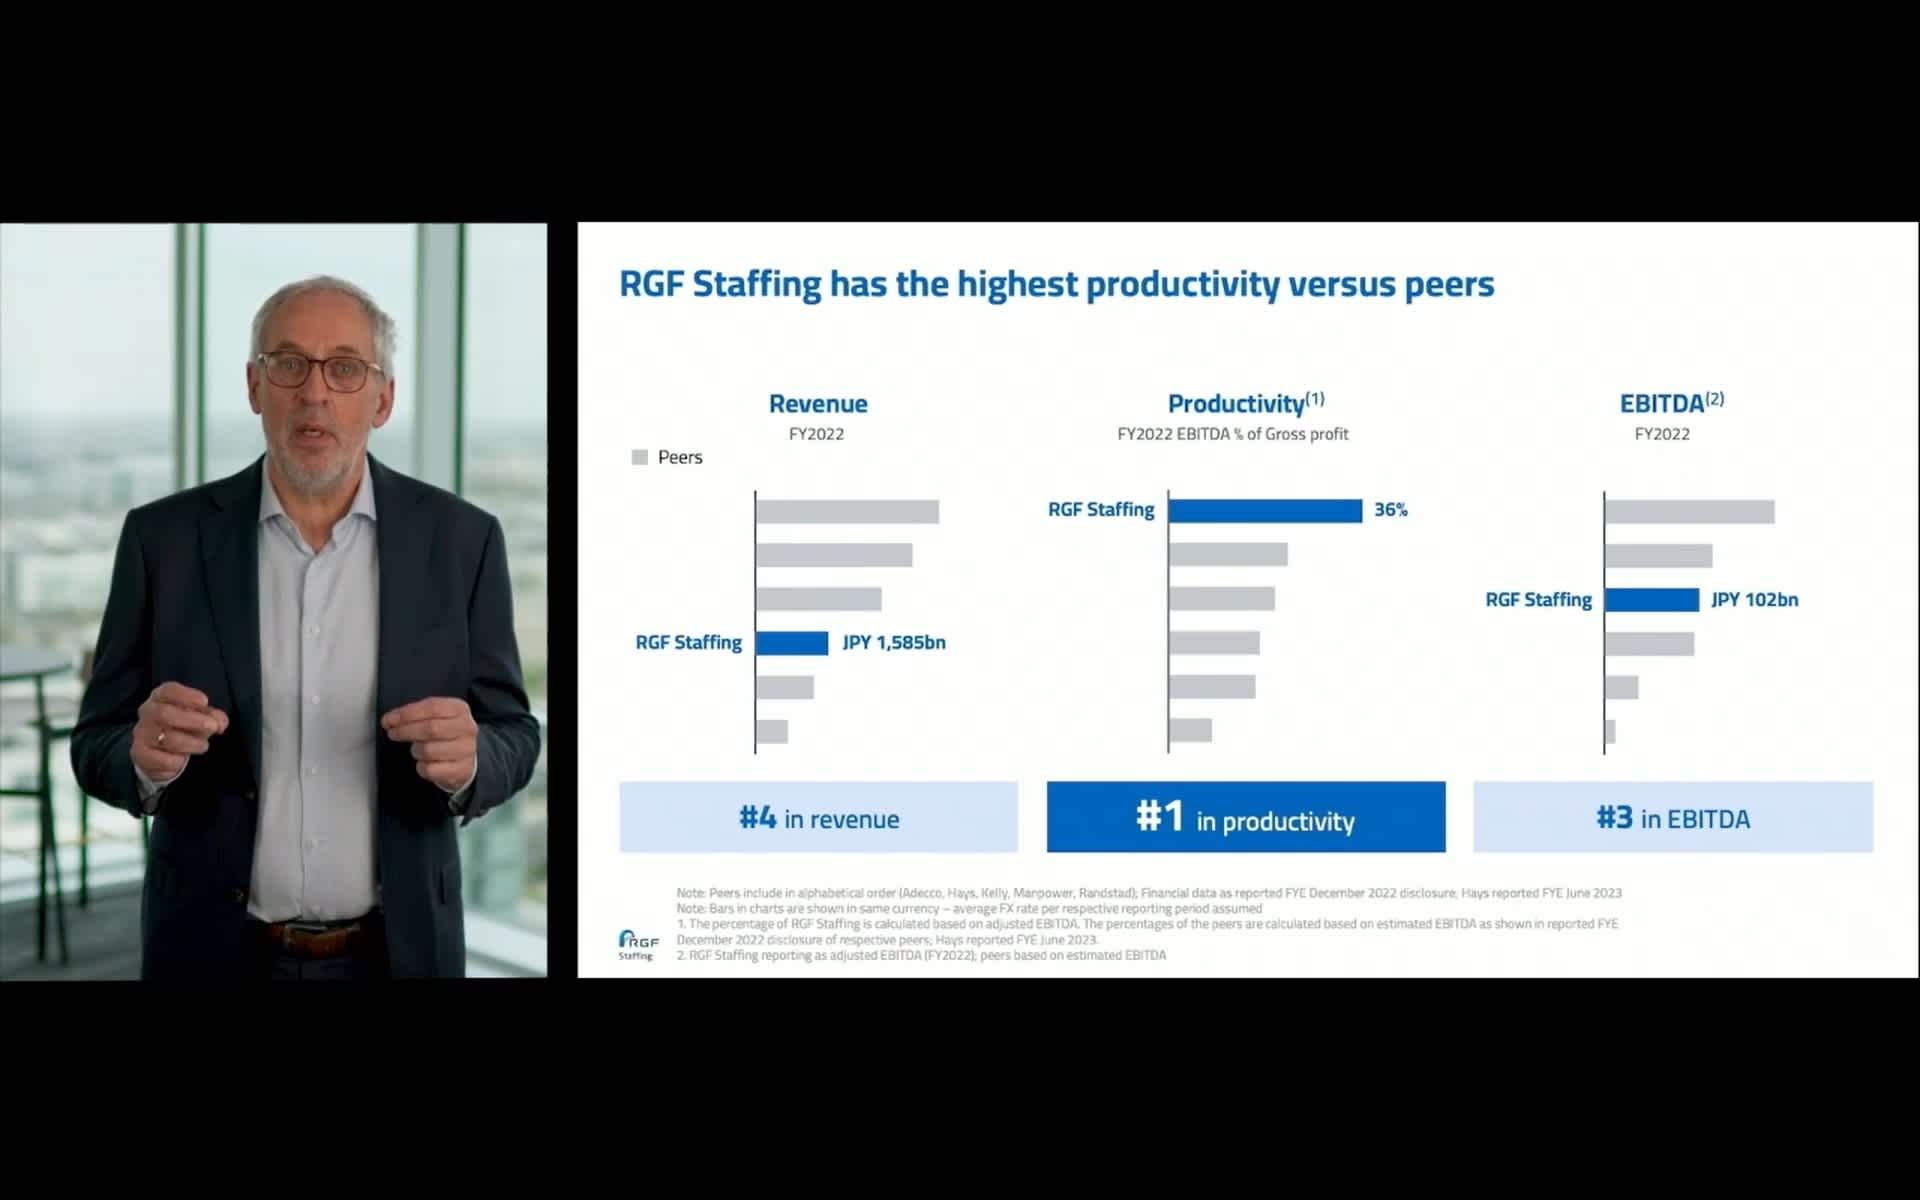 RGF Staffing CEOのRob Zandbergenが、プレゼンテーションで”RGF Staffing has the highest productivity versus peers”を説明する。Productivityにおいて1位を示している。